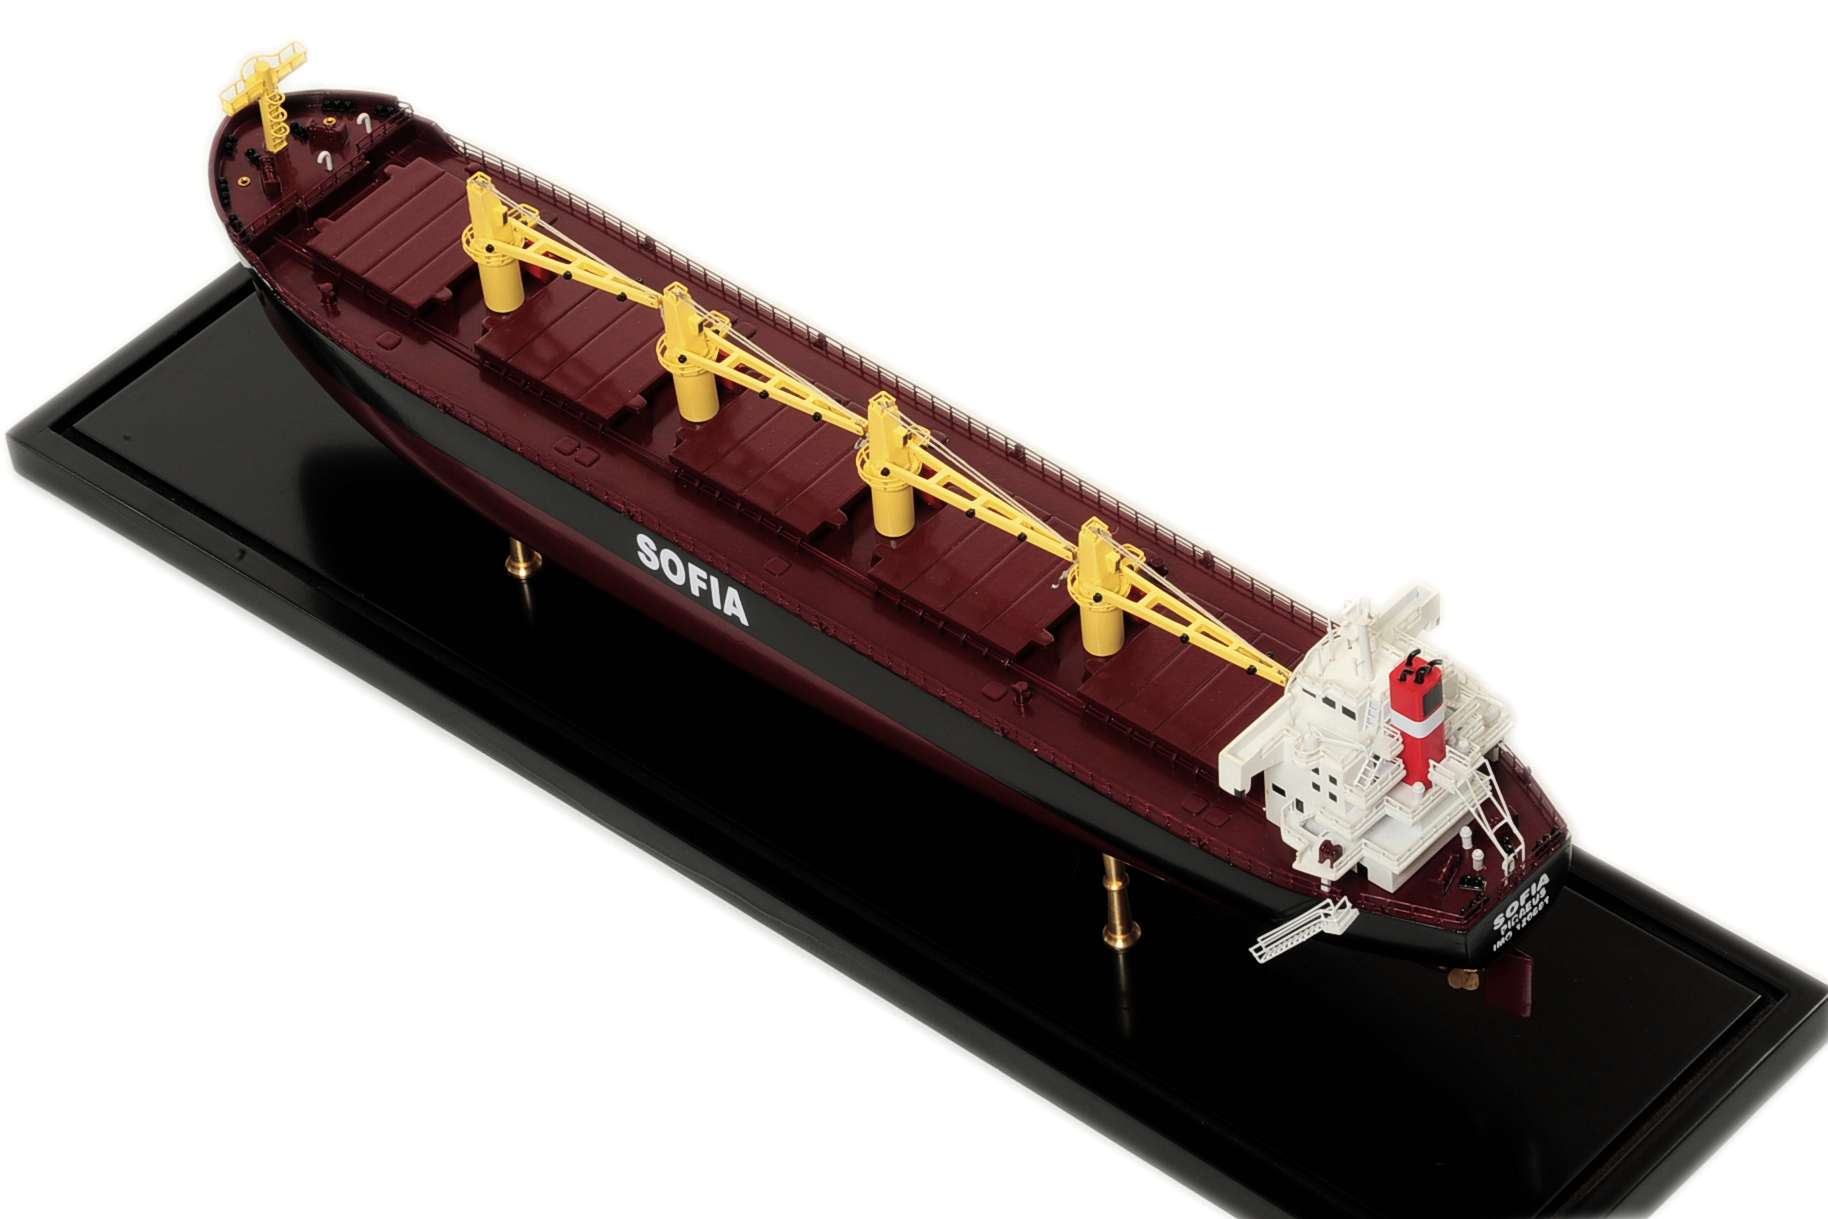 Bulk Carrier Model Ship